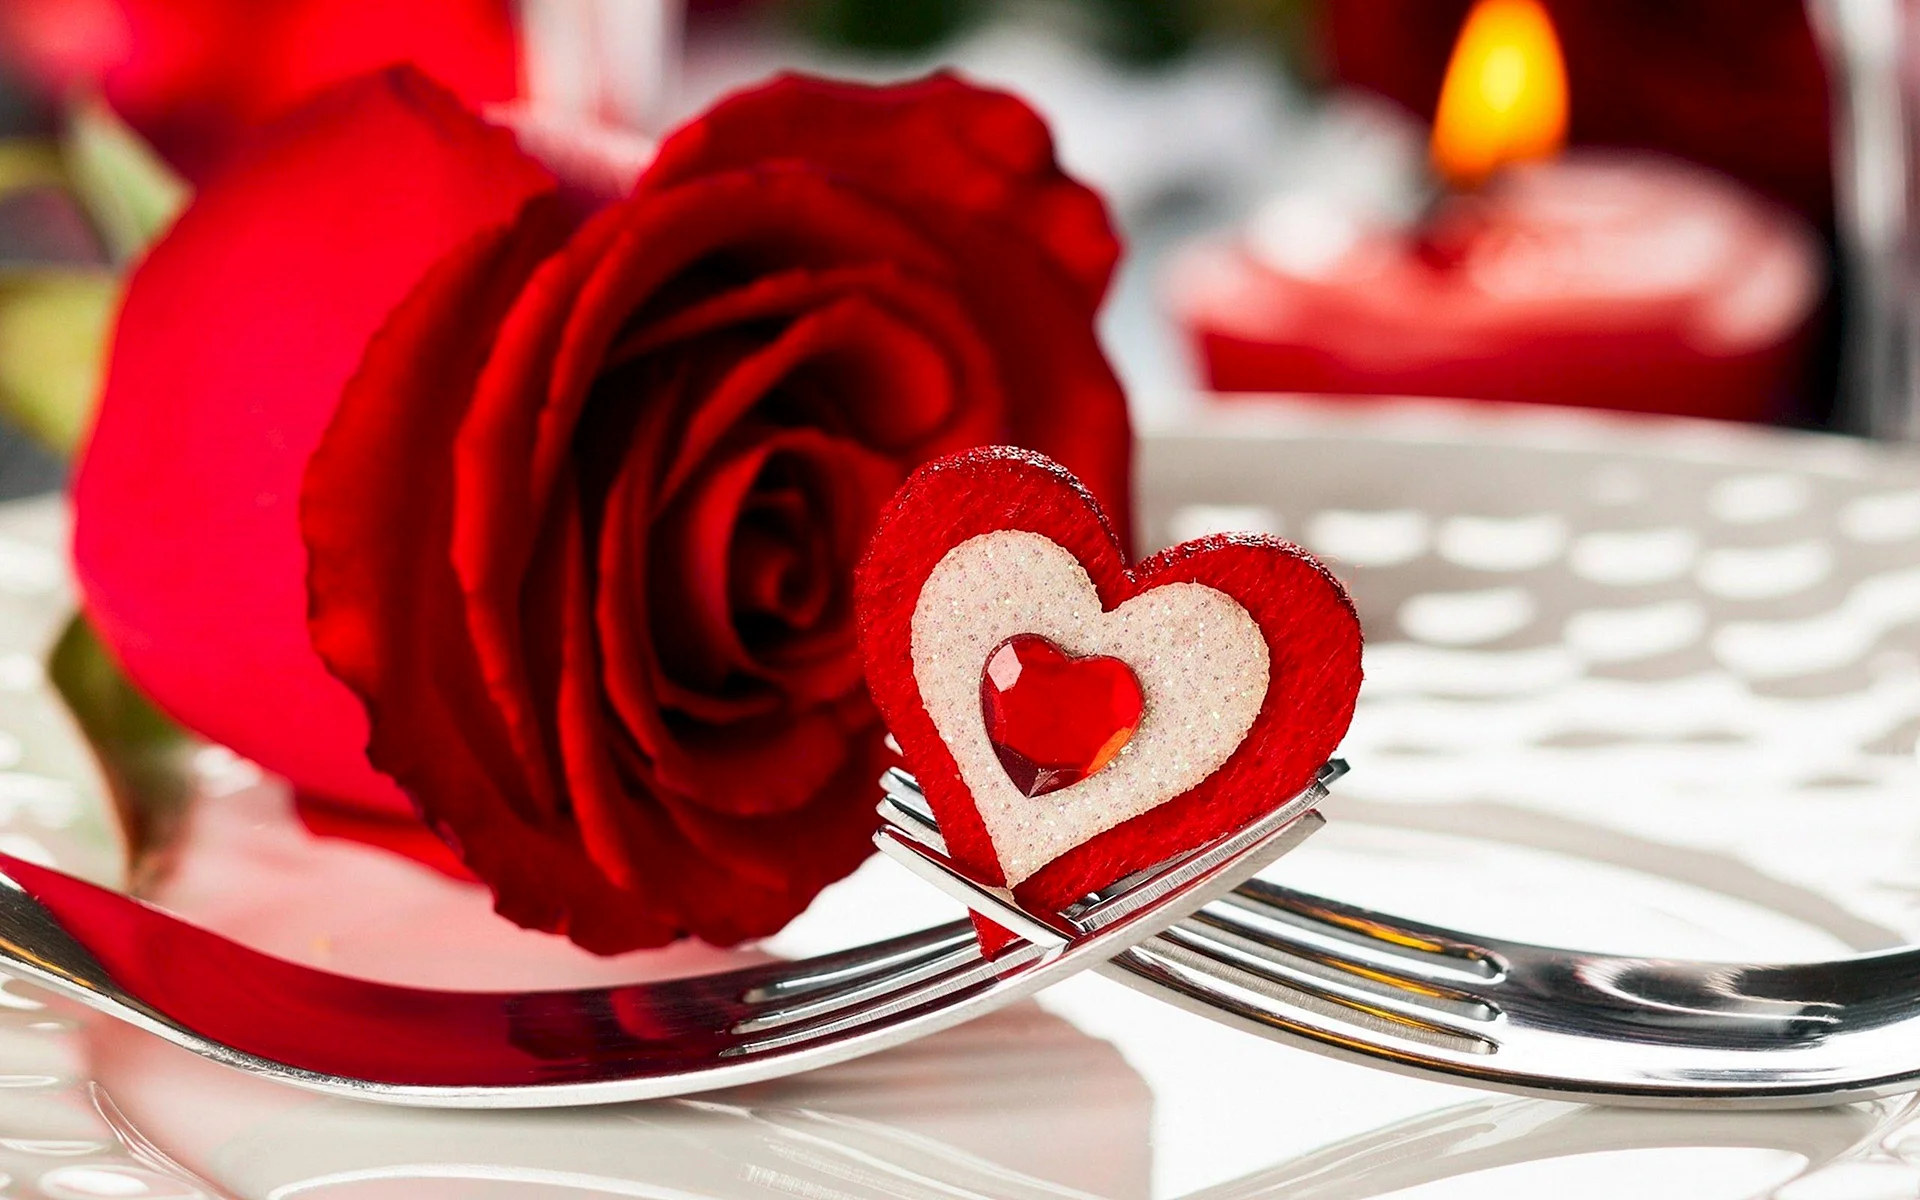 Romantic Red Rose Wallpaper